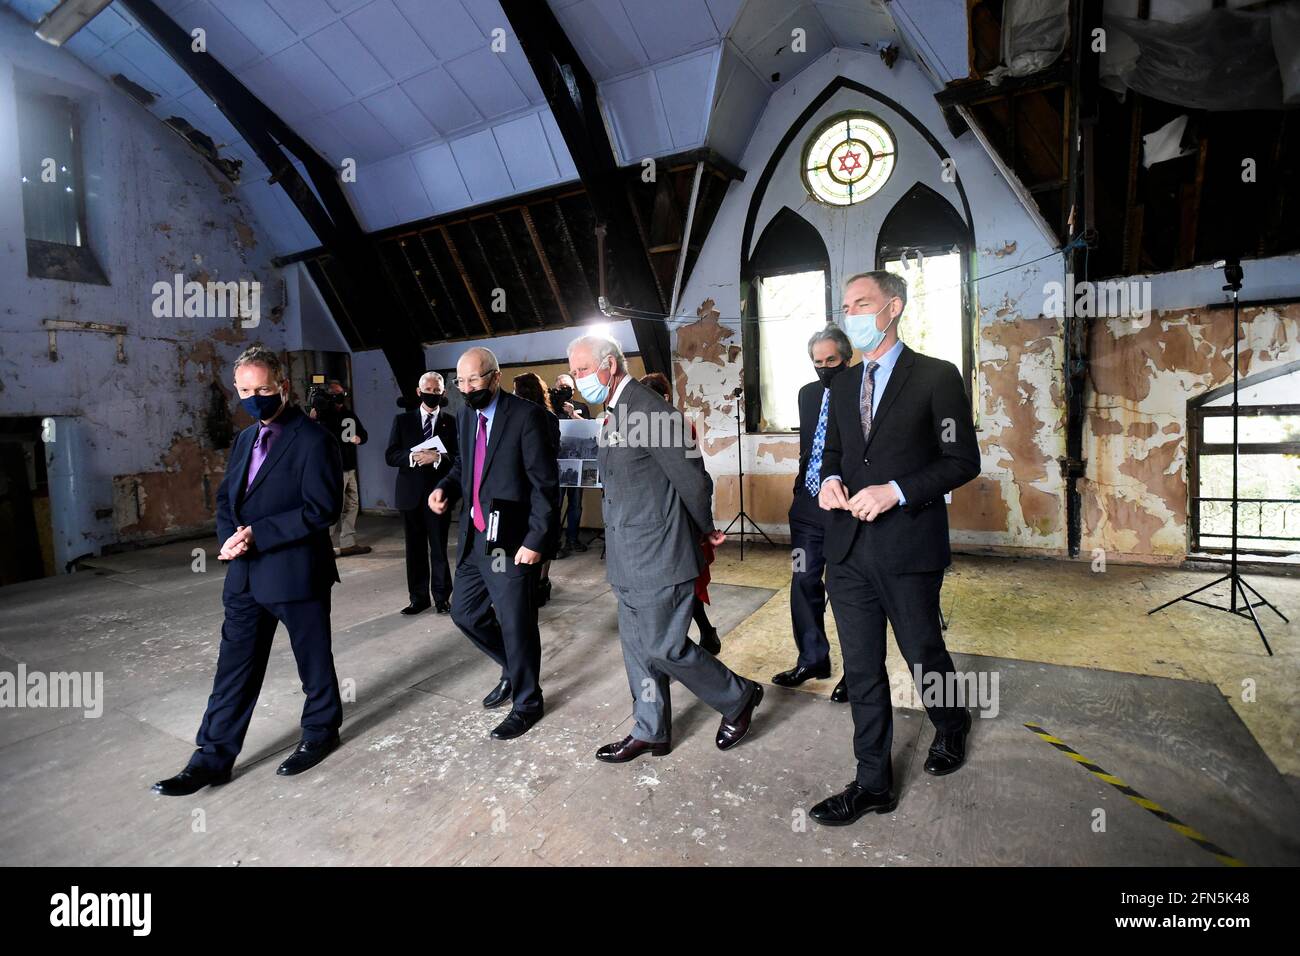 Il Principe di Galles (centro) durante una visita all'ex Sinagoga di Merthyr Tydfil a Merthyr Tydfil, Galles del Sud. Data immagine: Venerdì 14 maggio 2021. Foto Stock